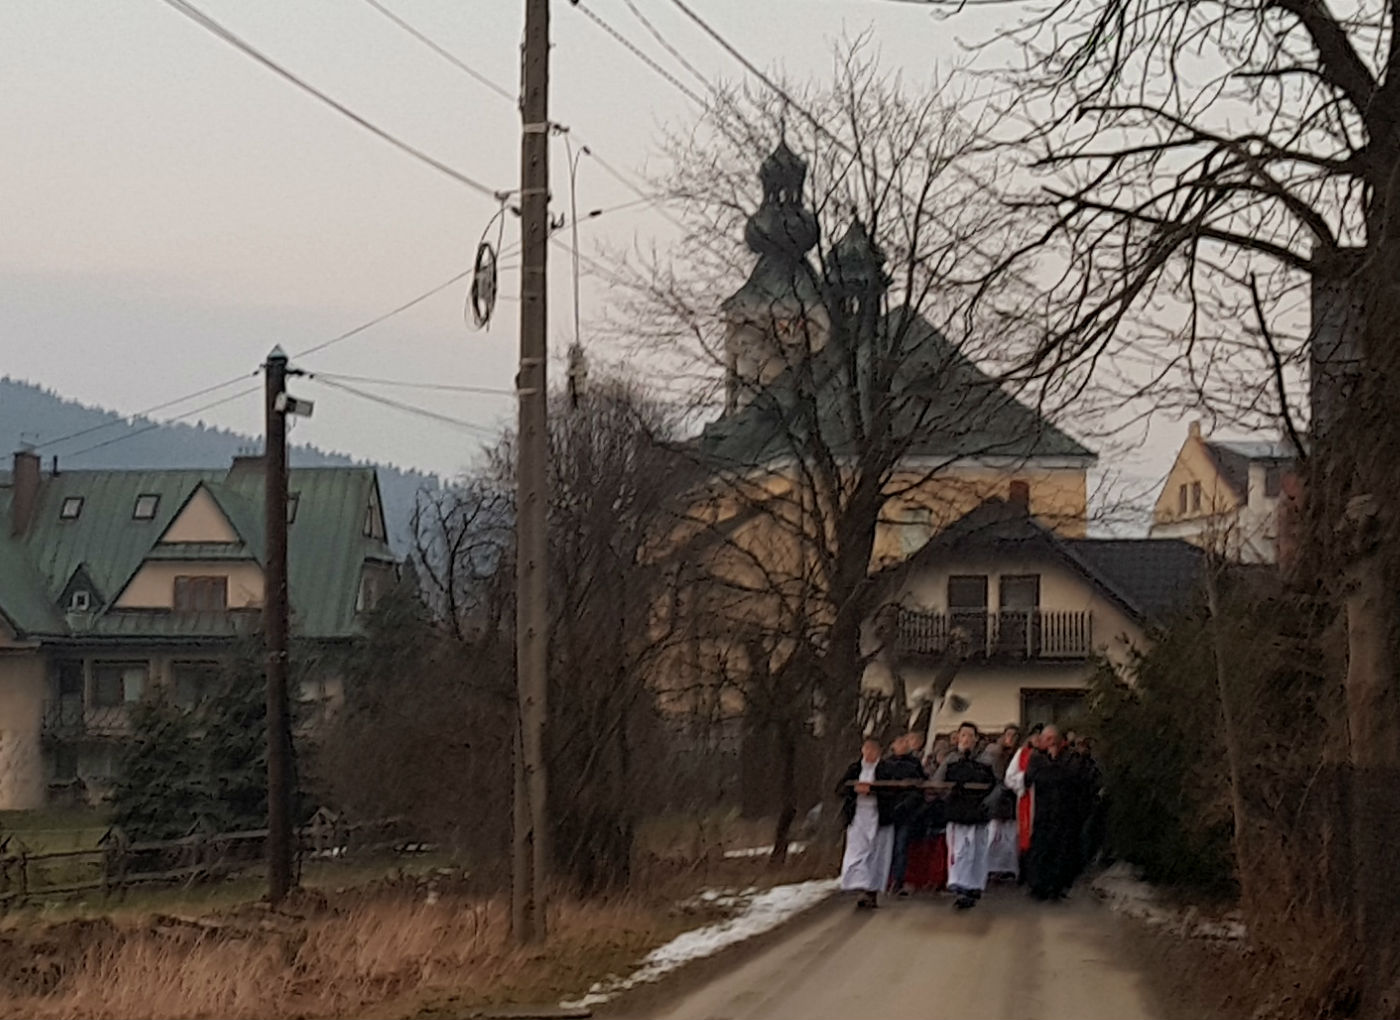 Modlitwa w drodze – Droga Krzyżowa ulicą Kościelną w Tymbarku